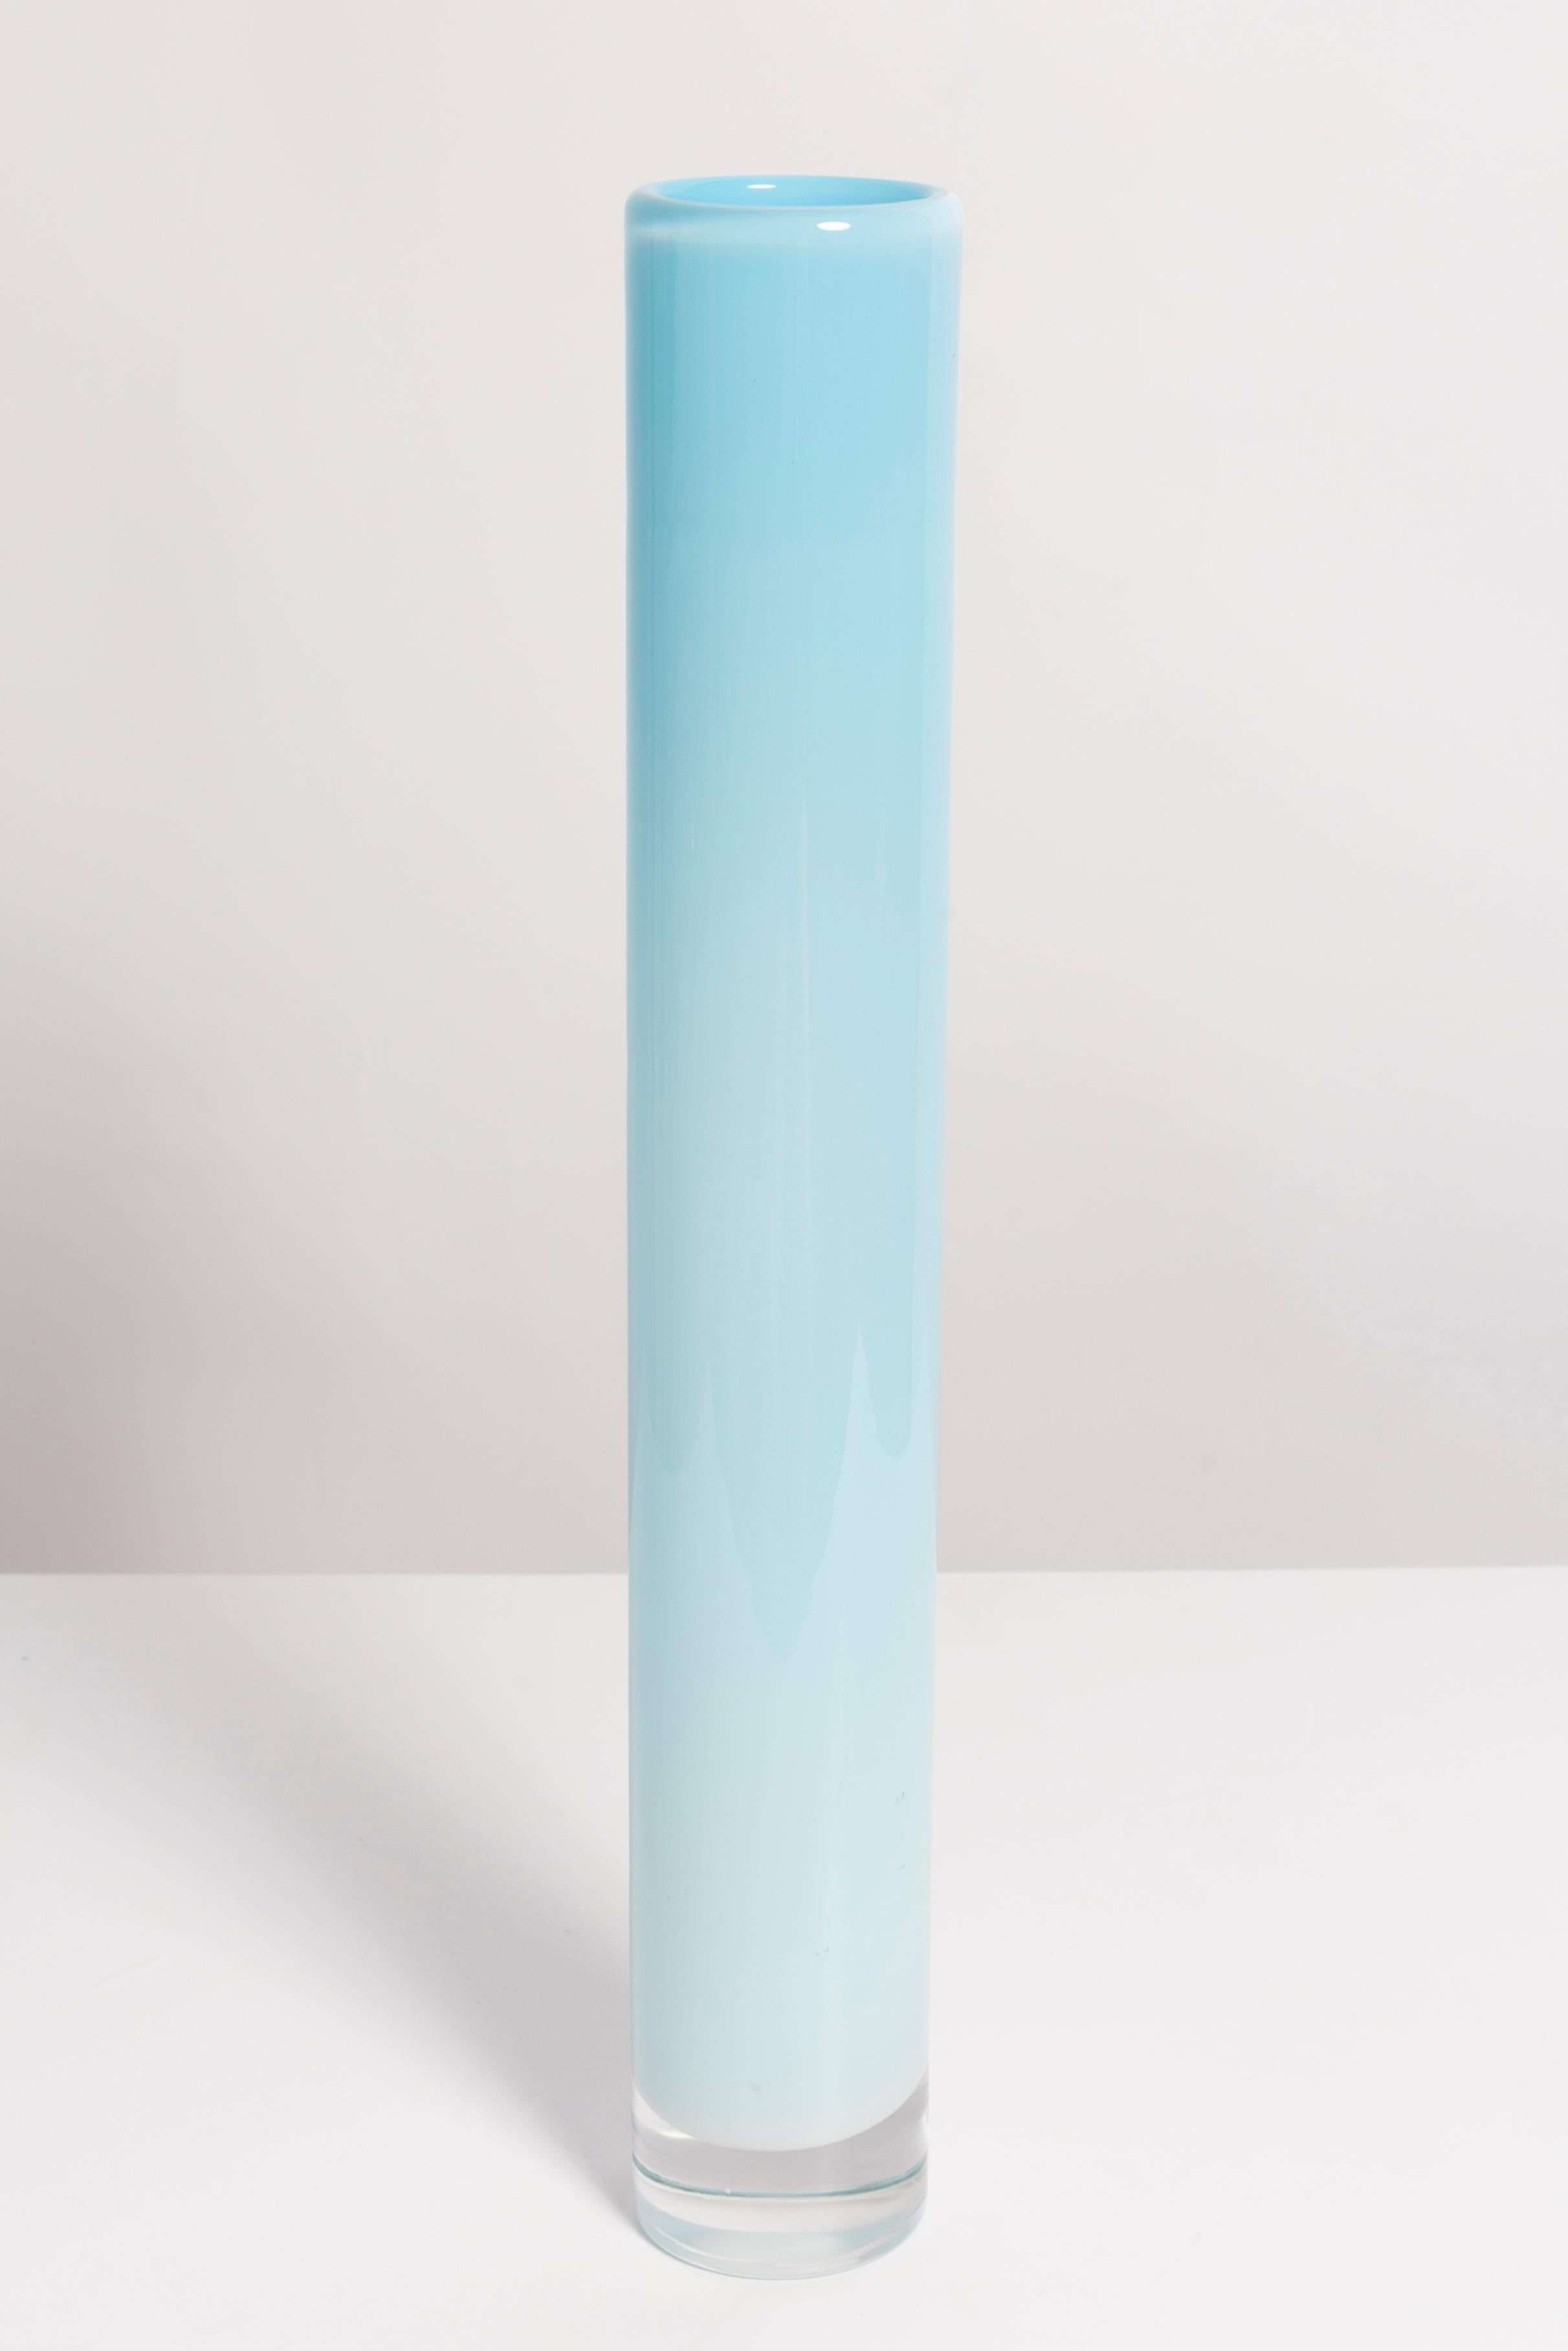 Vase bleu dans une forme étonnante. Produit dans les années 1960 en Pologne.
Verre en parfait état. Le vase semble avoir été sorti de sa boîte.

Pas d'accrocs, de défauts, etc. La surface extérieure en relief, l'intérieur lisse. Vase en verre